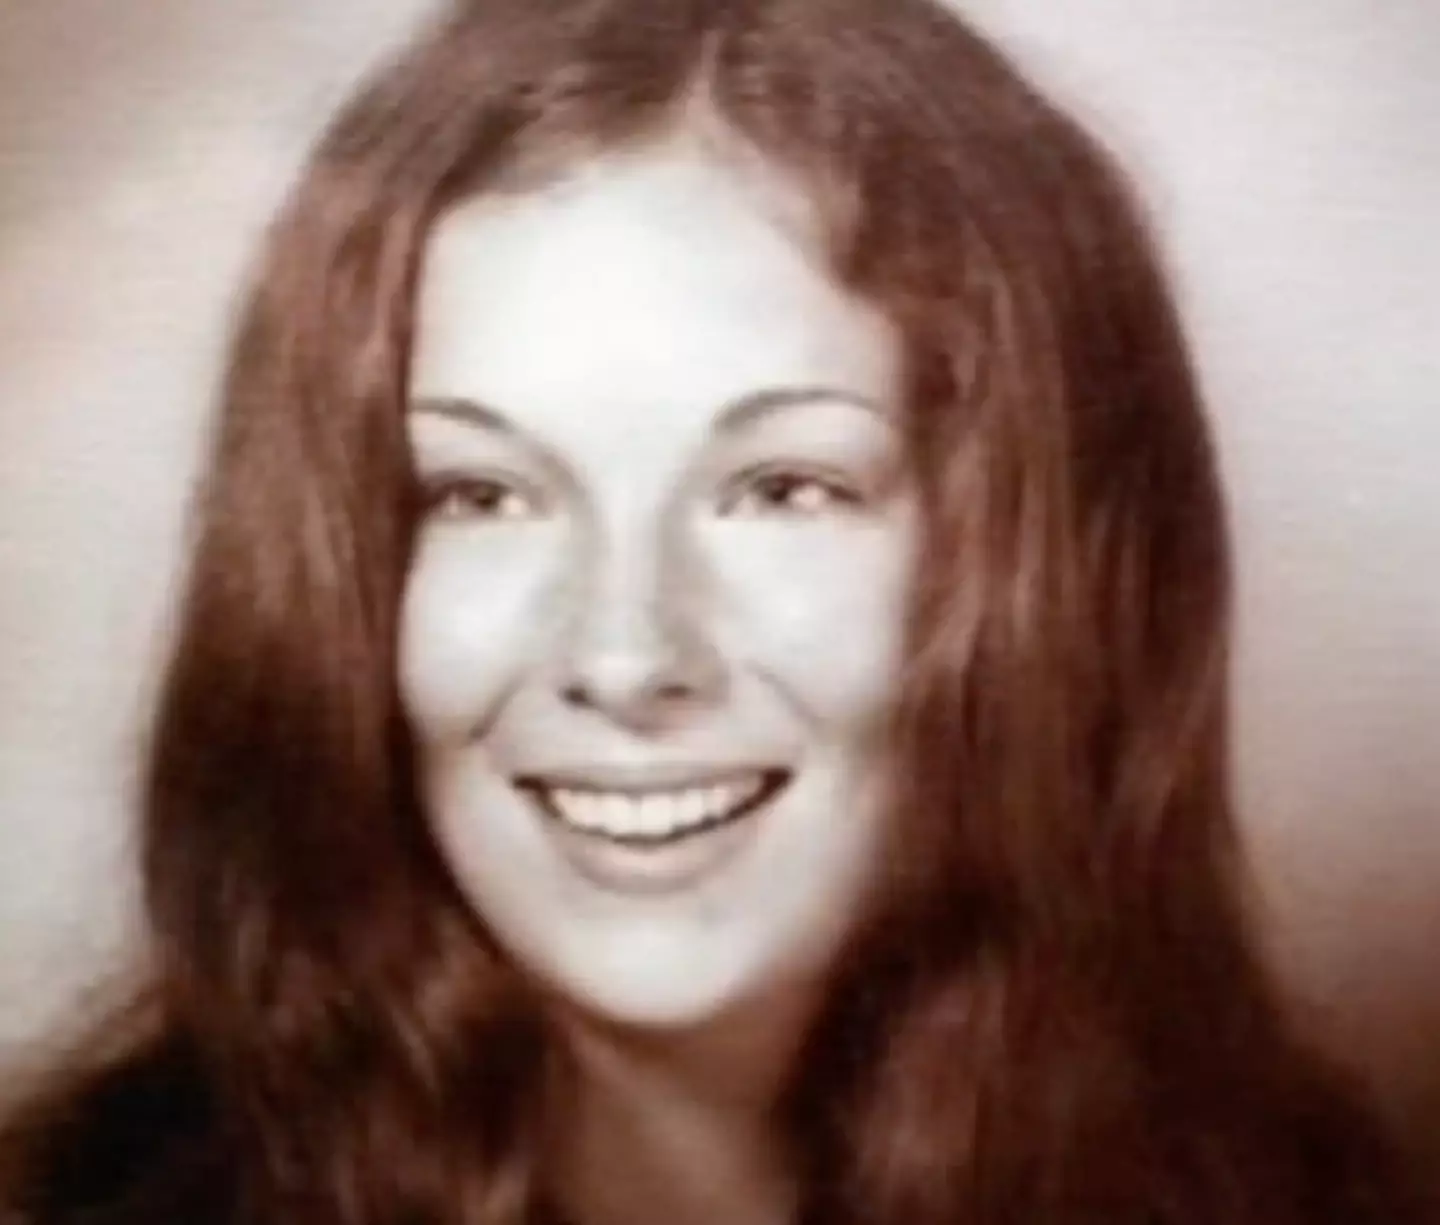 Lindy Sue Biechler was killed in December 1975.